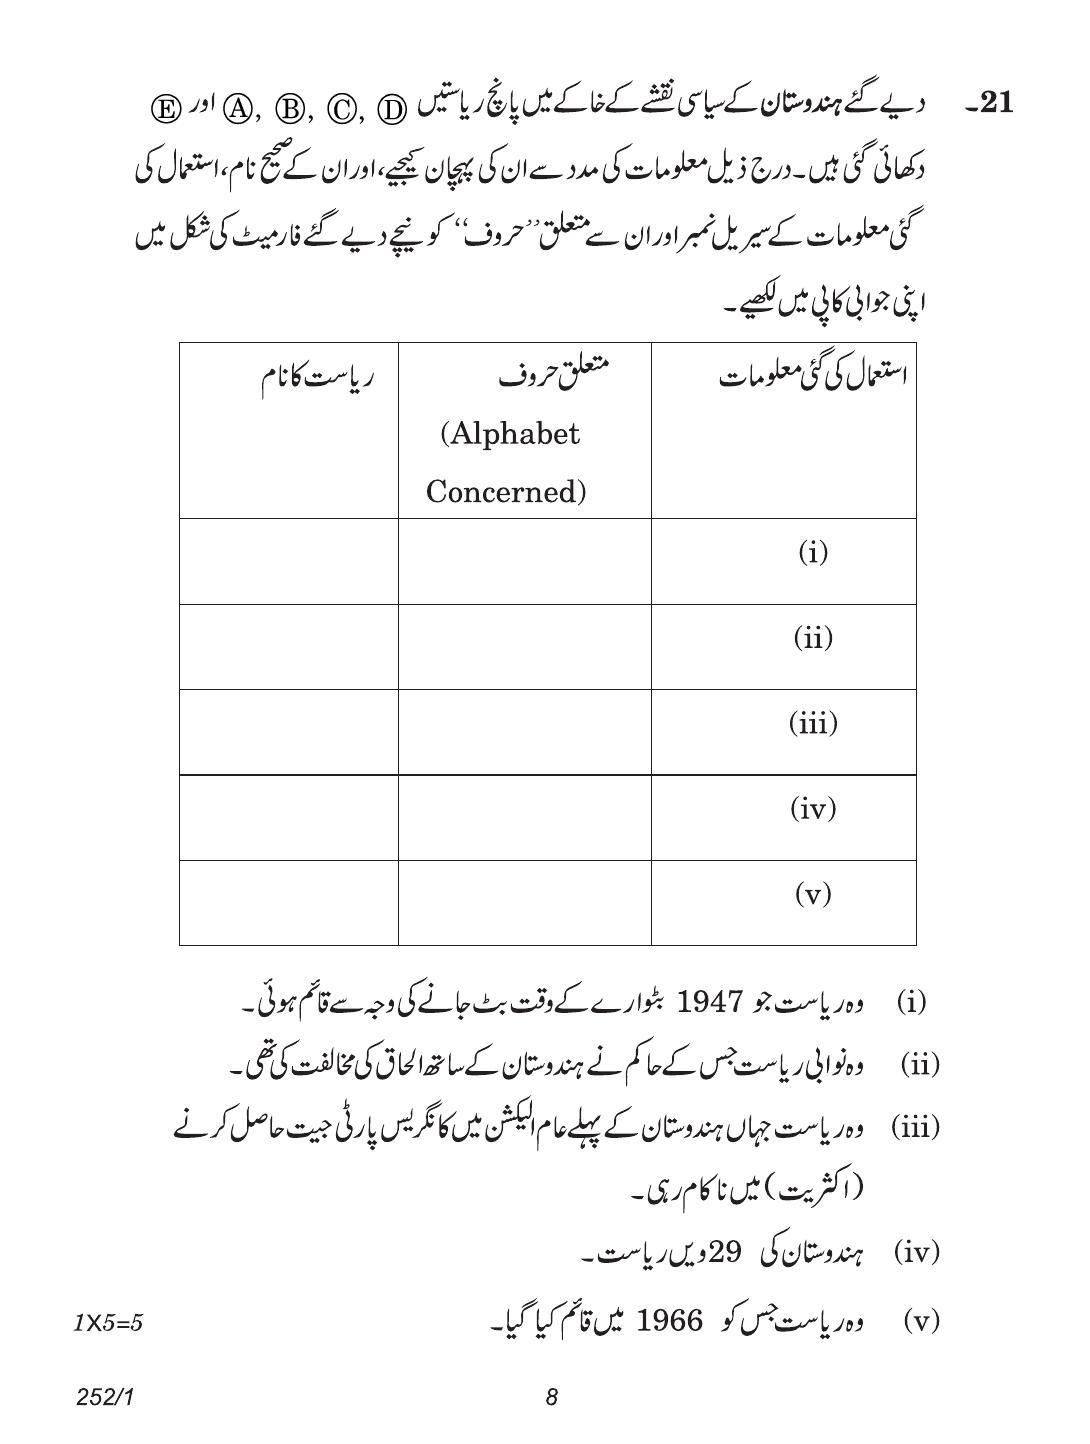 CBSE Class 12 252-1 (Political Science Urdu) 2018 Question Paper - Page 8